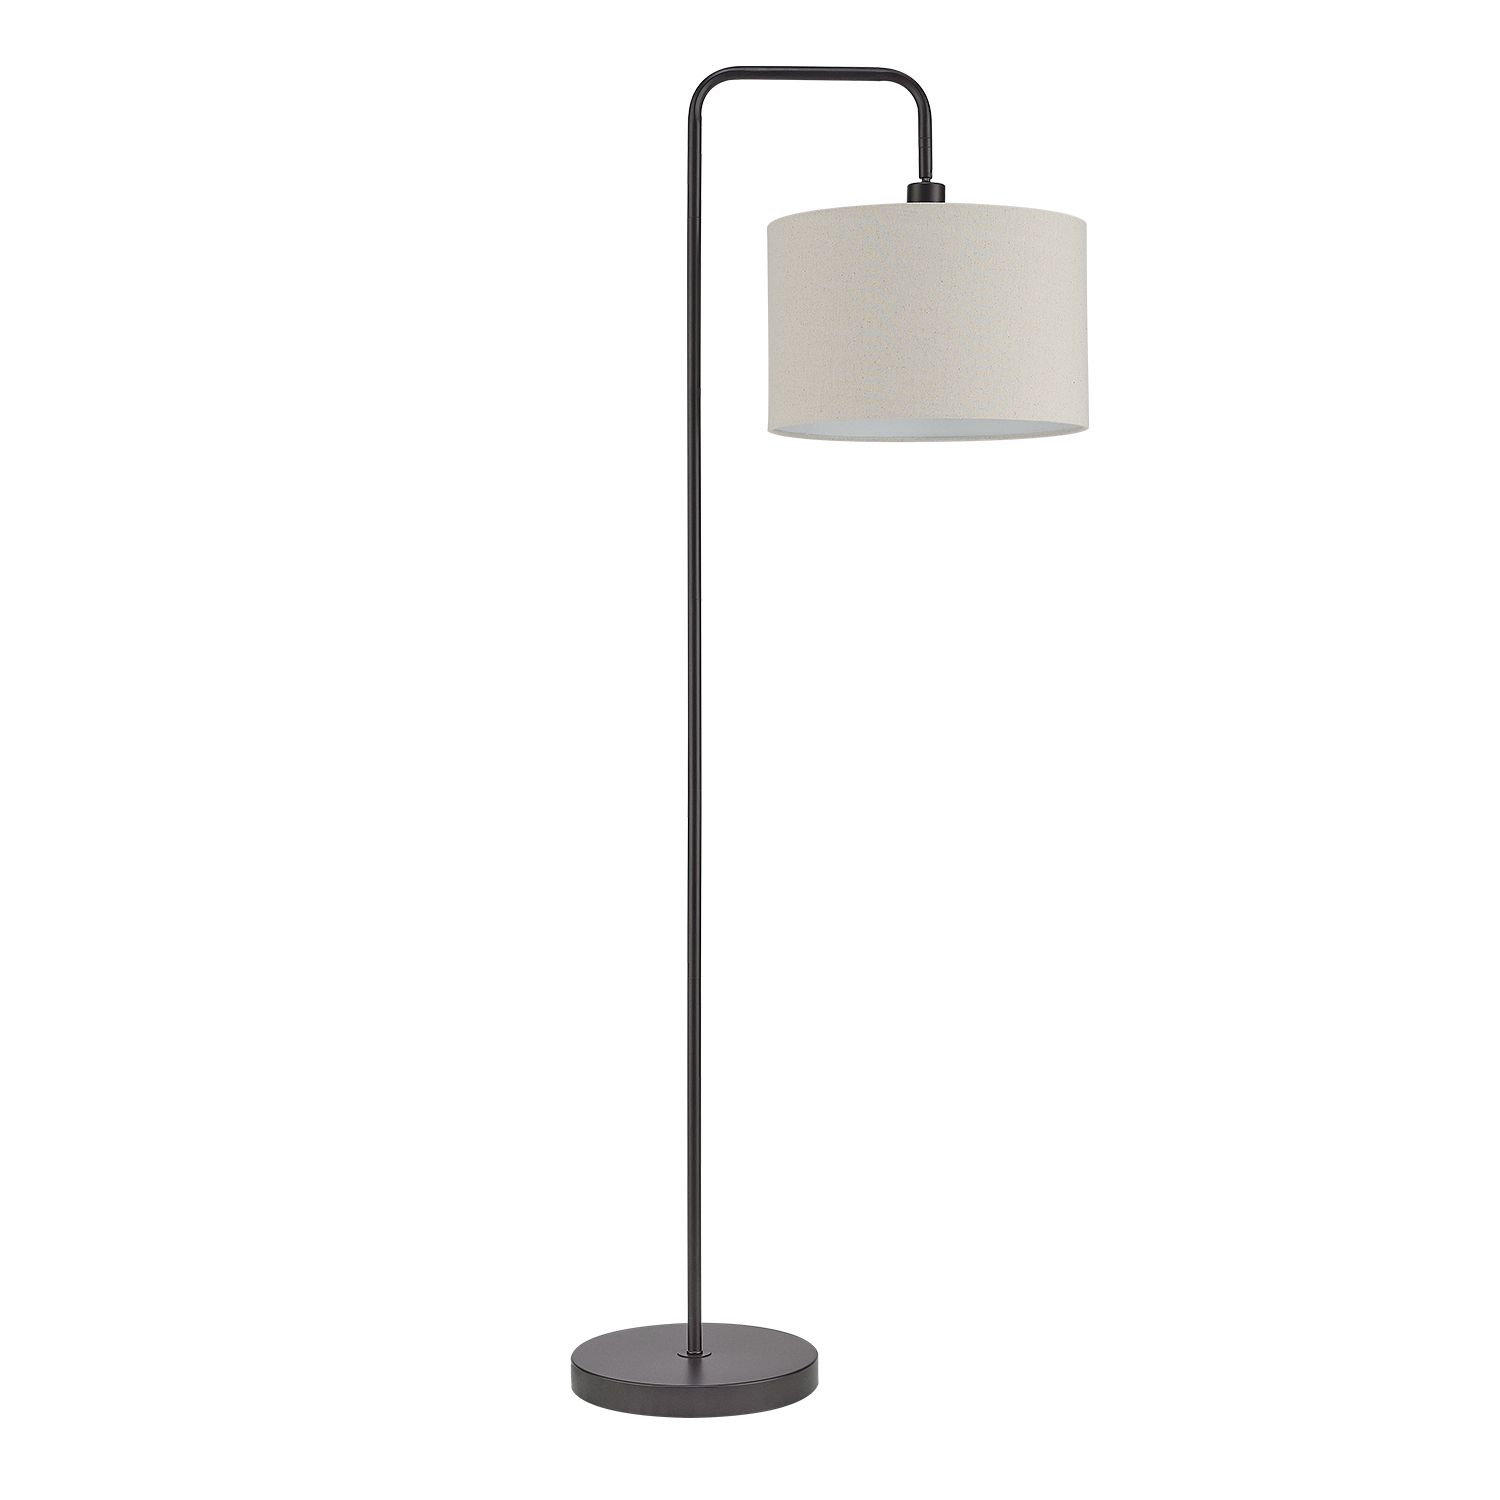 Globe Electric Barden 58" Dark Bronze Floor Lamp With Beige Fabric Shade,  67395 – Walmart Intended For Dark Bronze Floor Lamps (View 5 of 20)